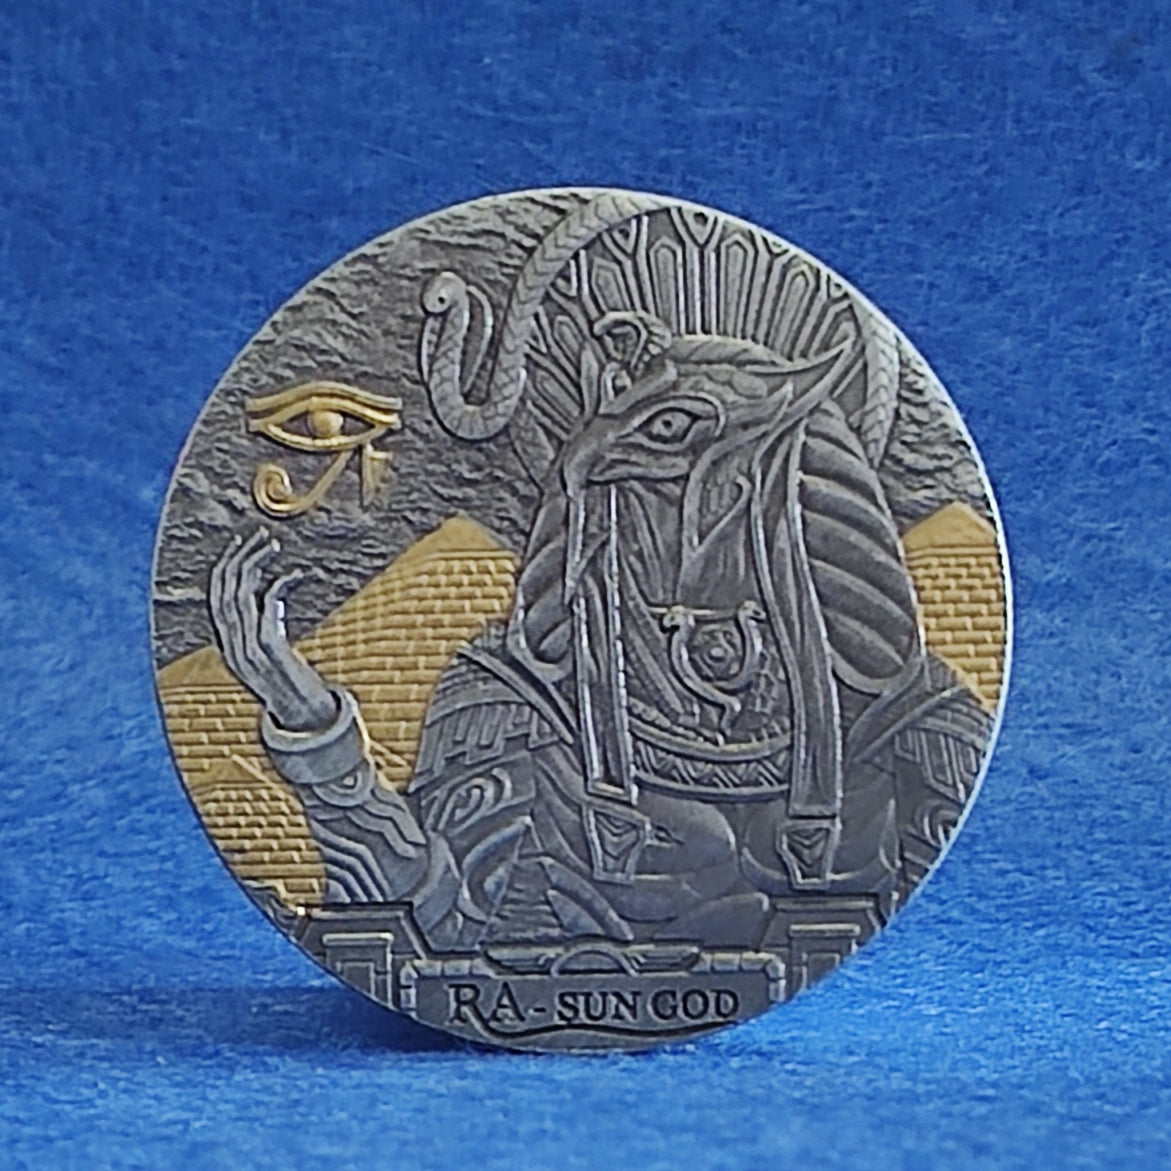 Coin RA god of sun ancient Egyptian myth - Eye of Horus with prestigious case